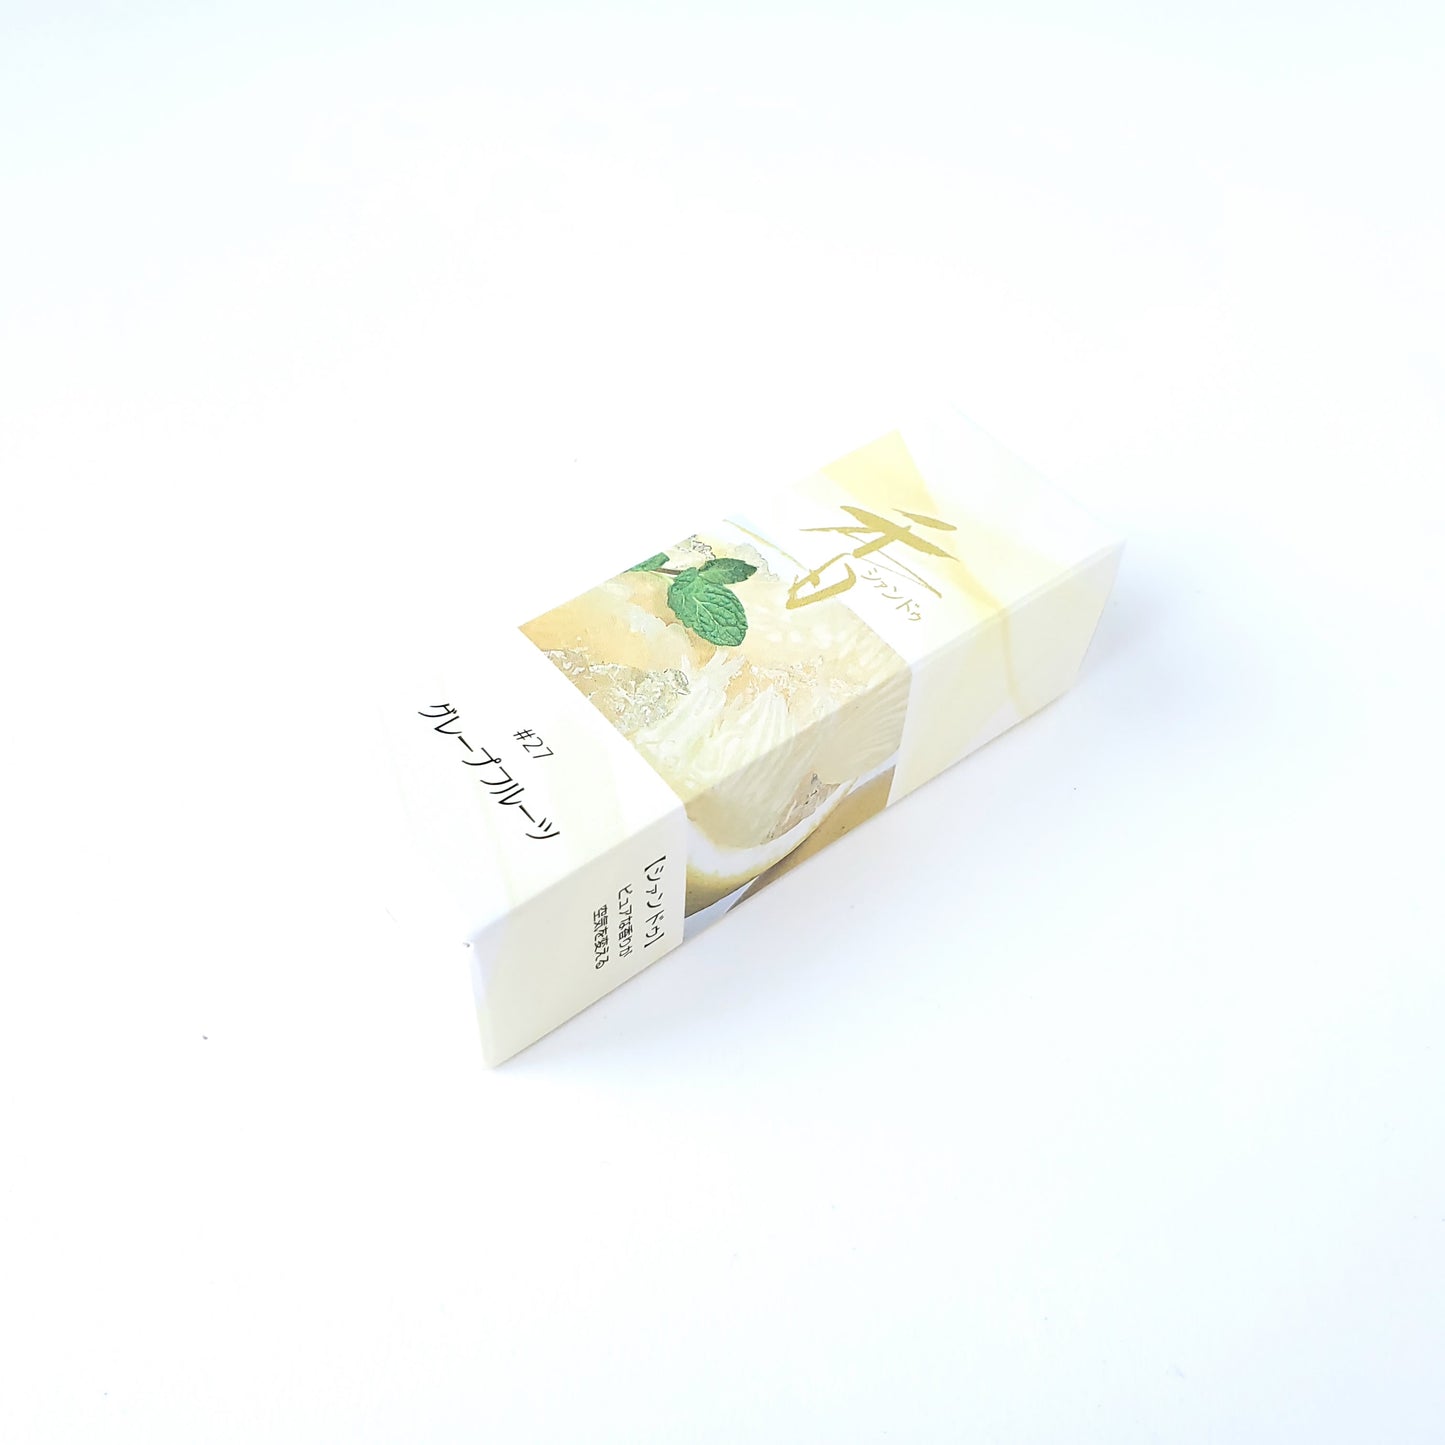 松栄堂のお香 シァンドゥ グレープフルーツ Xiang Do 京都 スティック アロマ インセンス 日本製